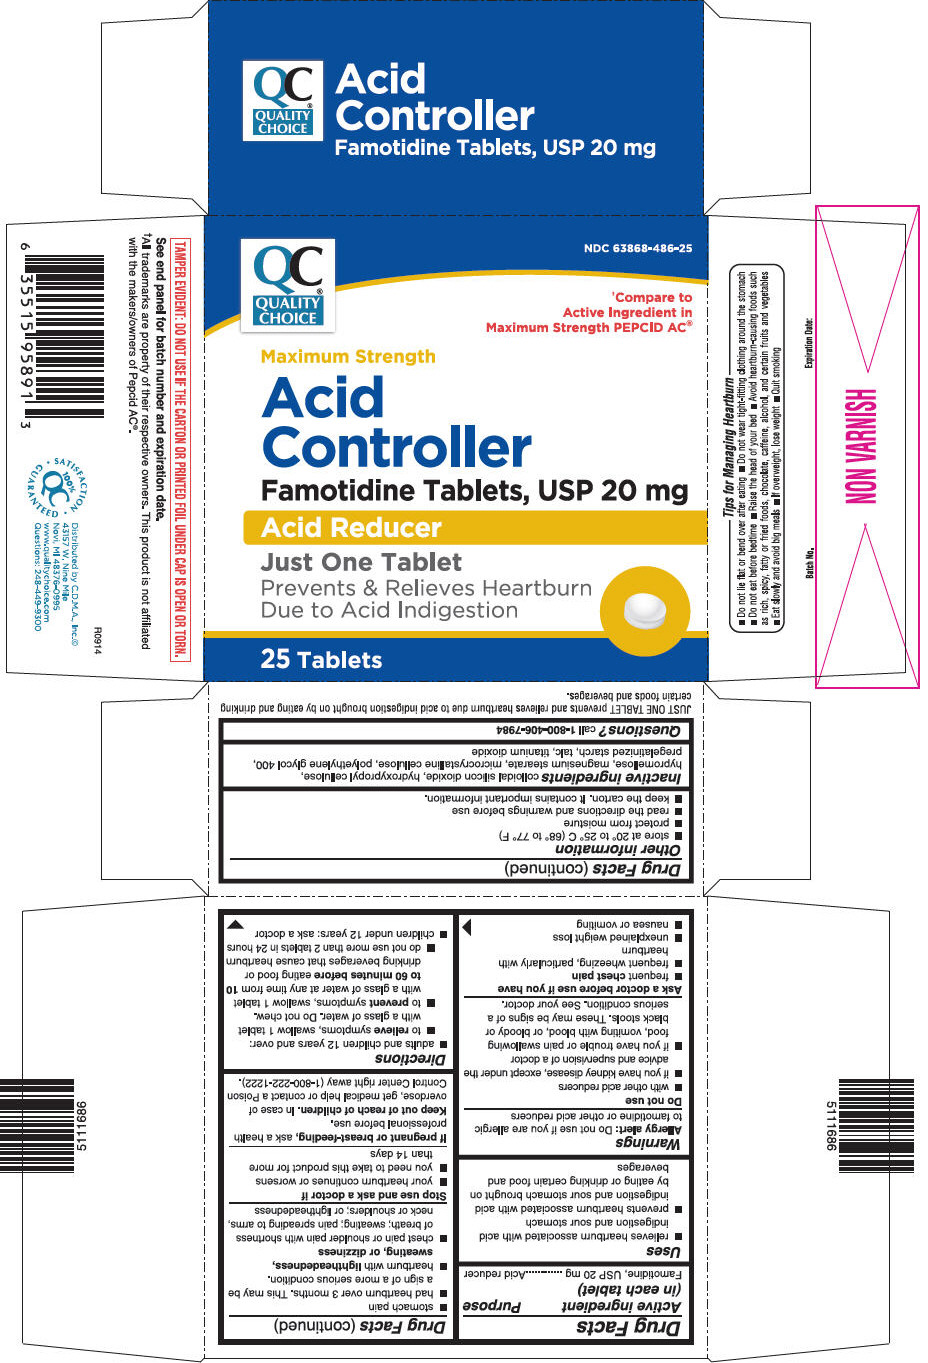 PRINCIPAL DISPLAY PANEL - 20 mg Tablet Bottle Carton